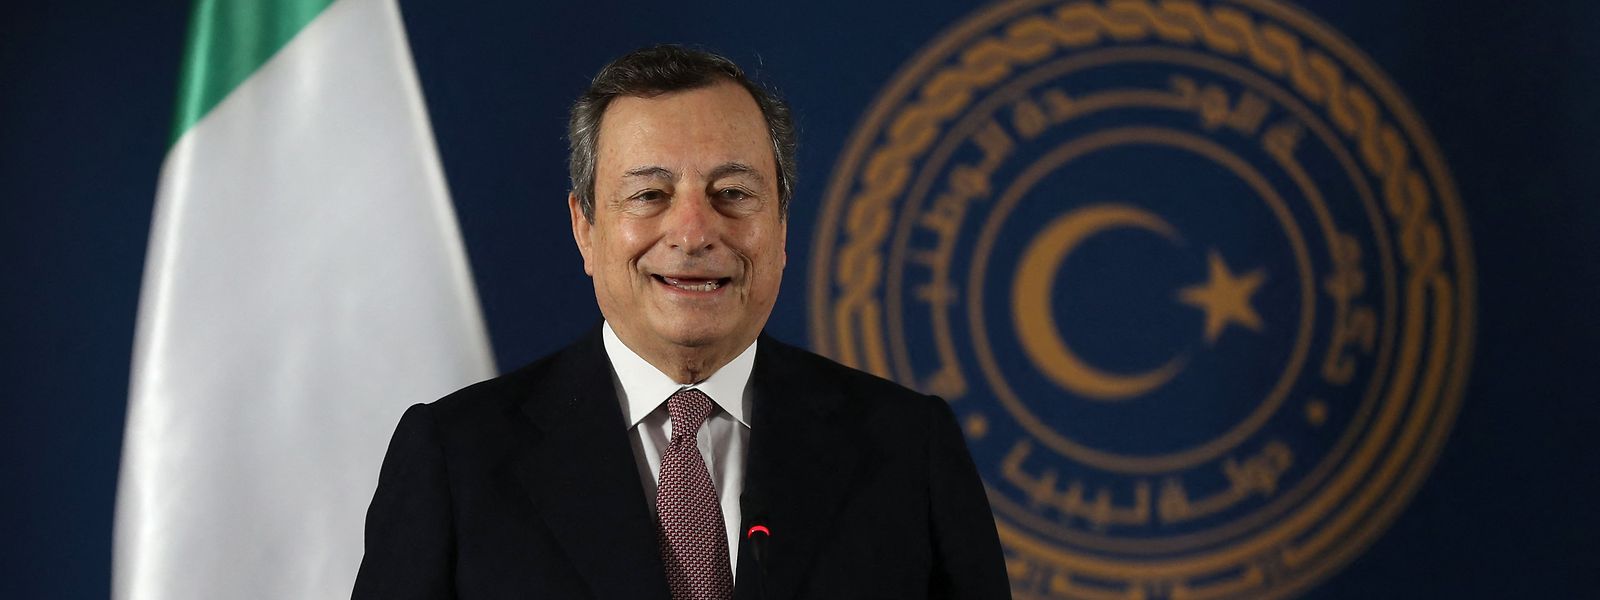 Nach den Äußerungen von Mario Draghi bestellte die Türkei den italienischen Botschafter ein.